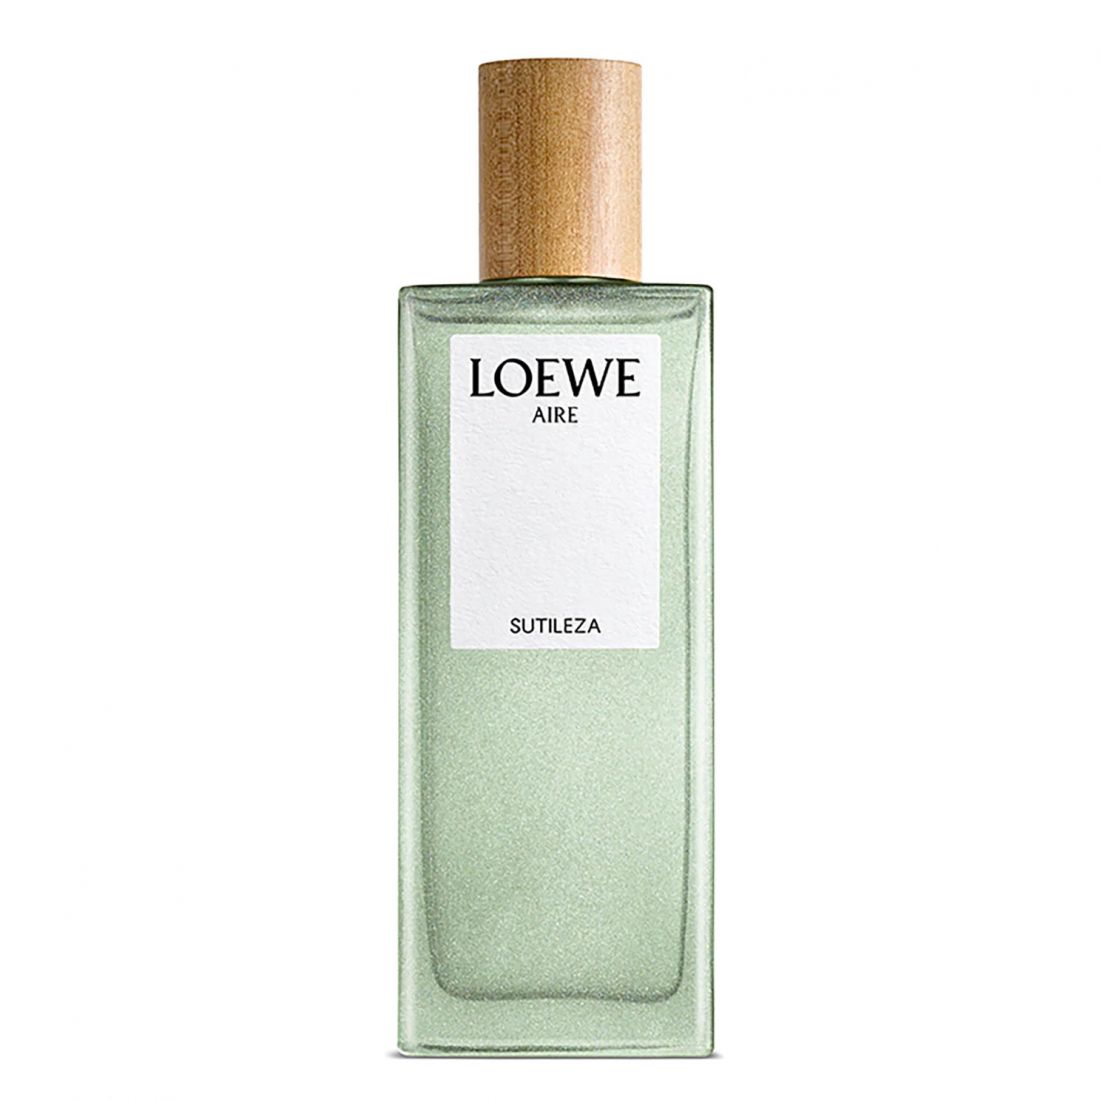 Loewe - Eau de toilette 'Aire Sutileza' - 100 ml